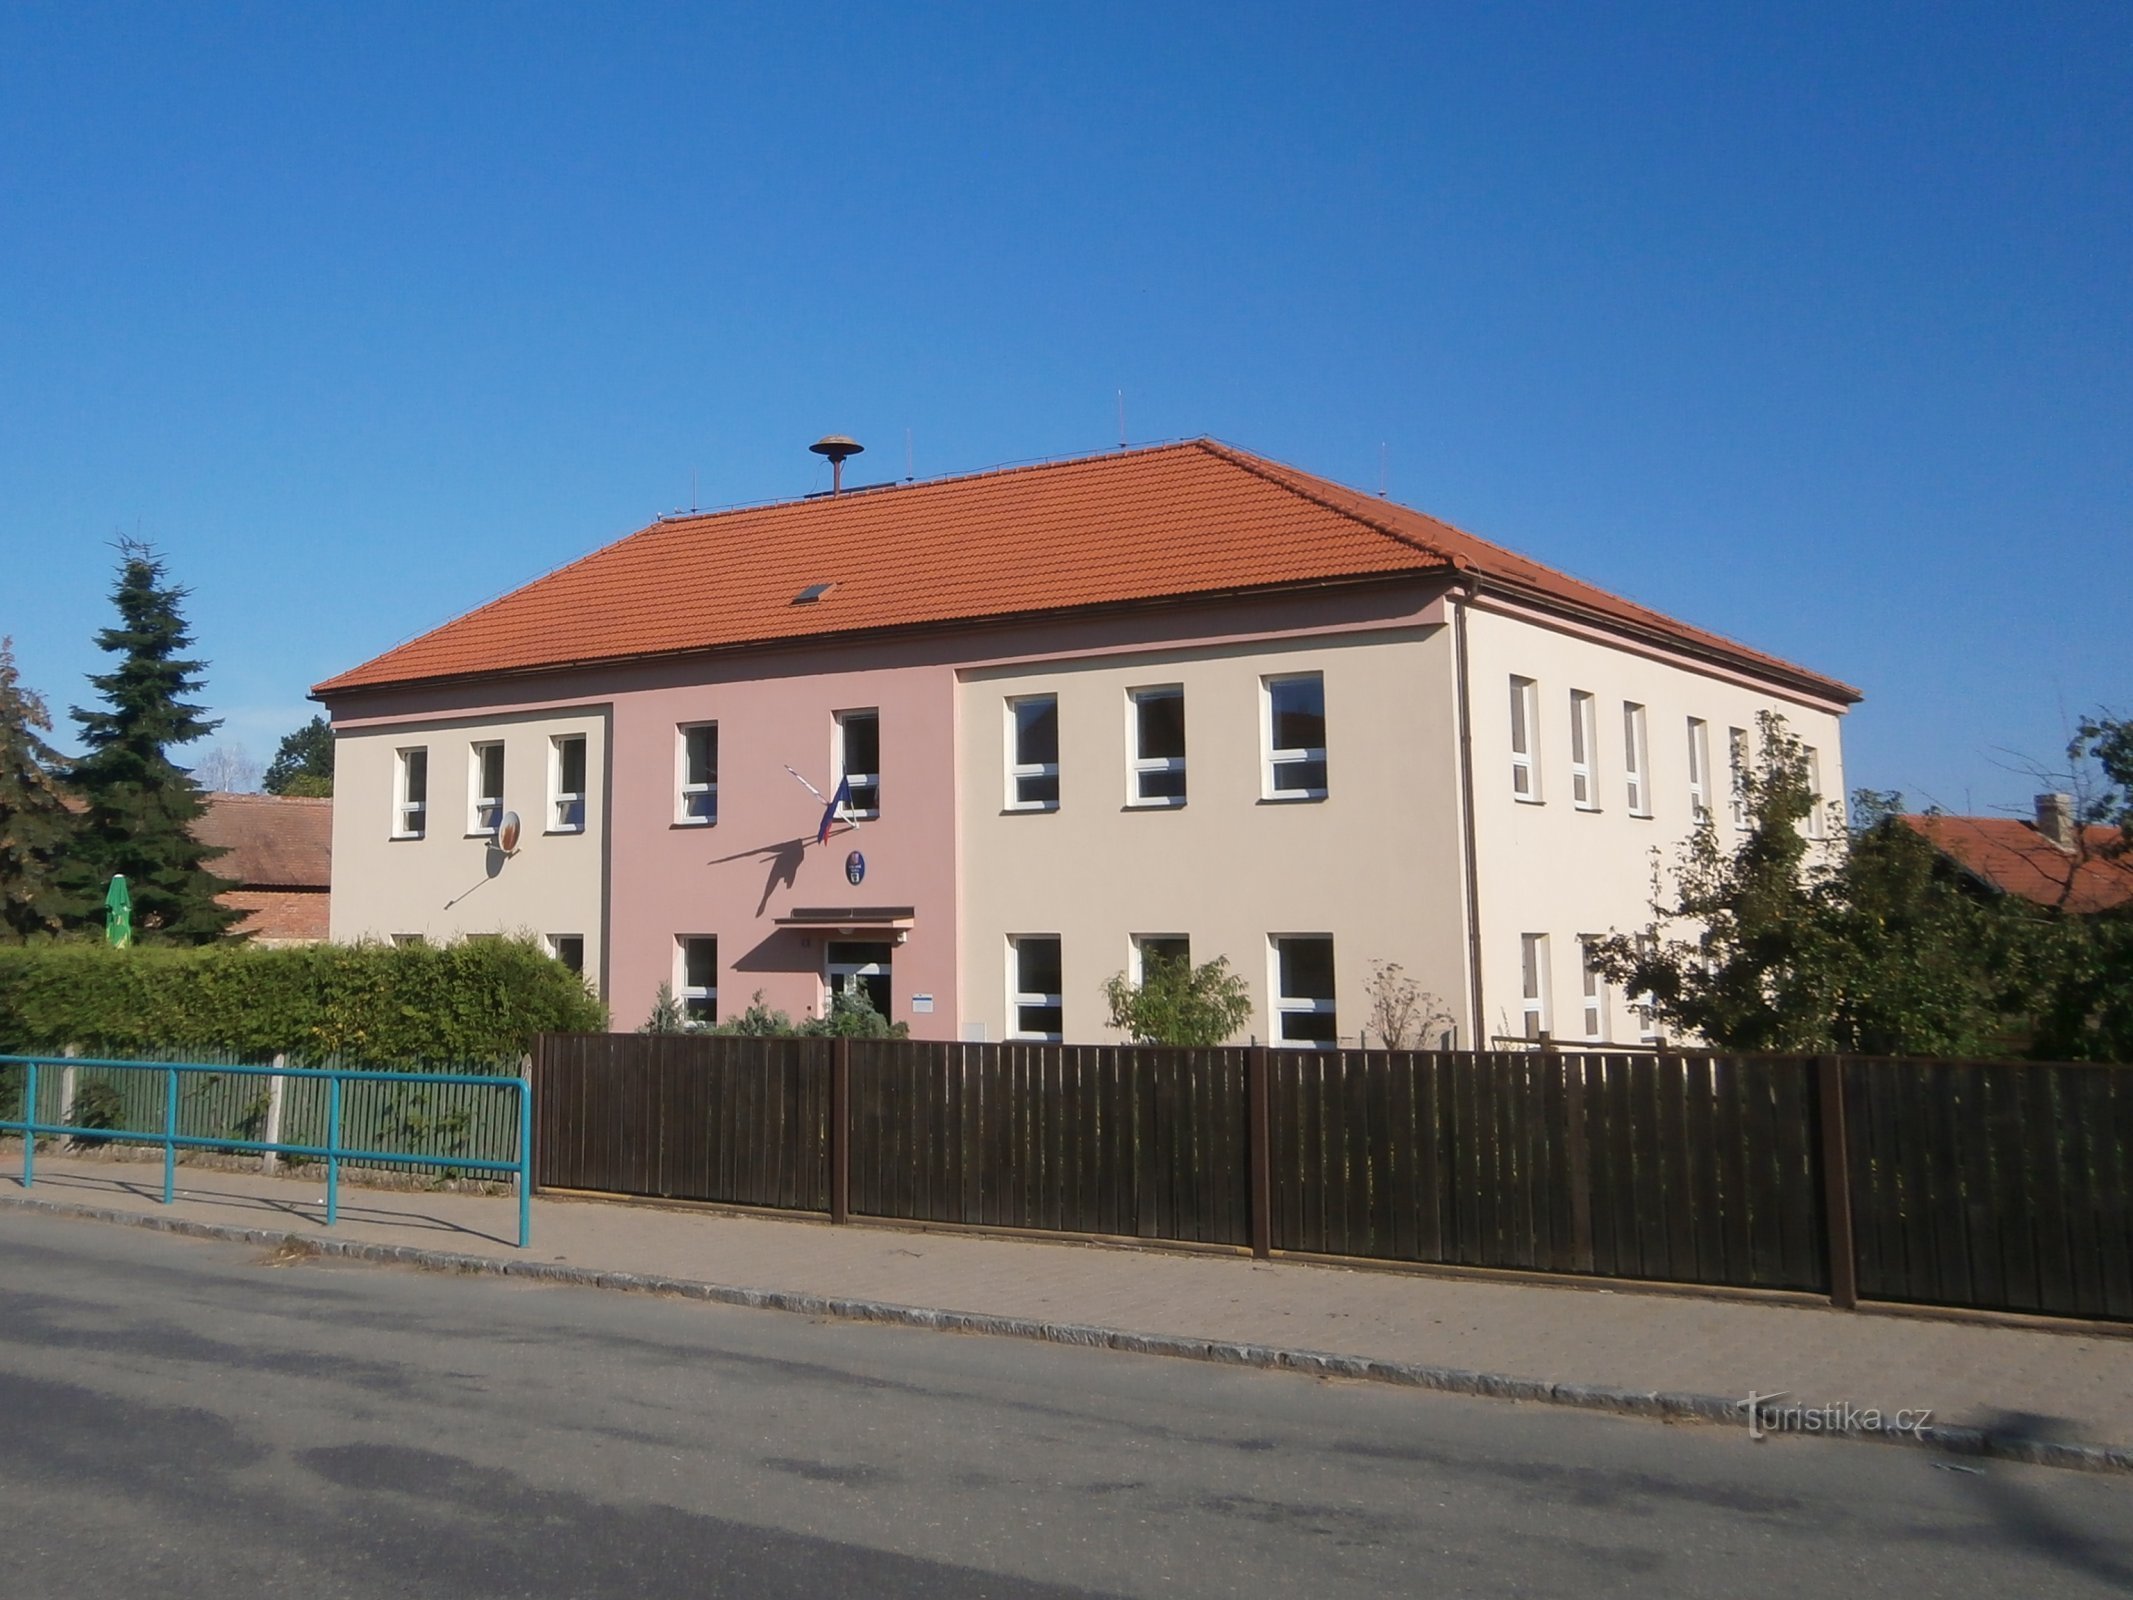 Trường học (Staré Ždánice, 30.7.2017/XNUMX/XNUMX)